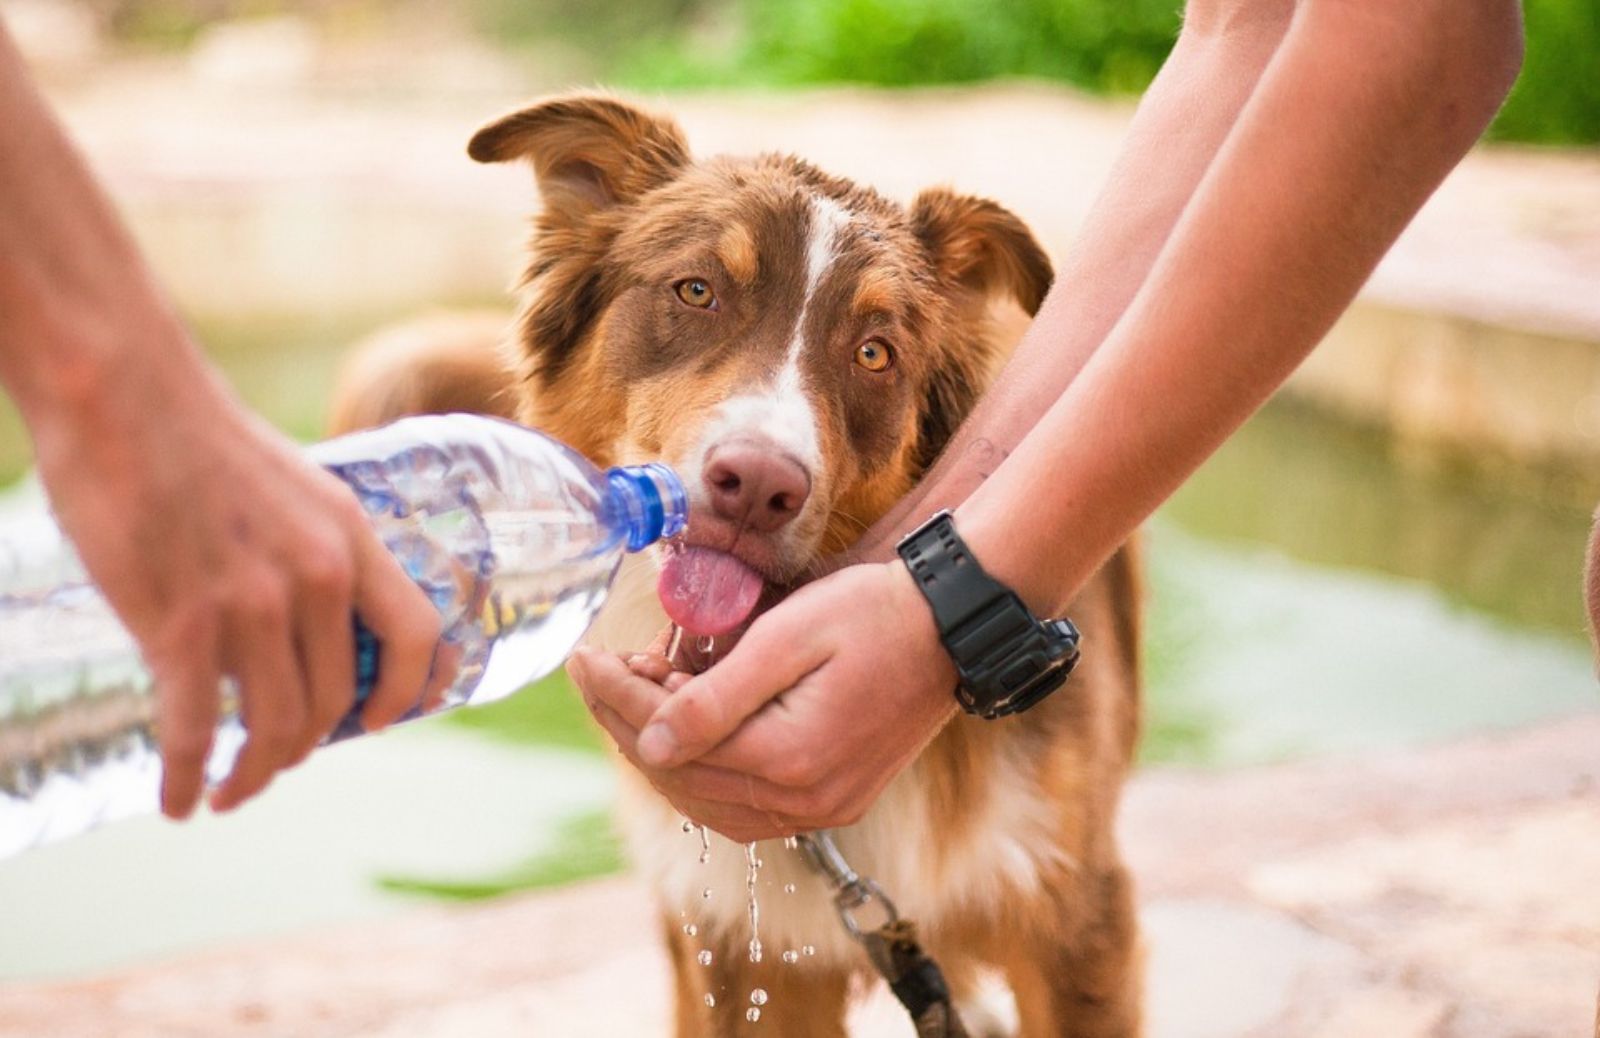 Quanta acqua deve bere al giorno un cane?